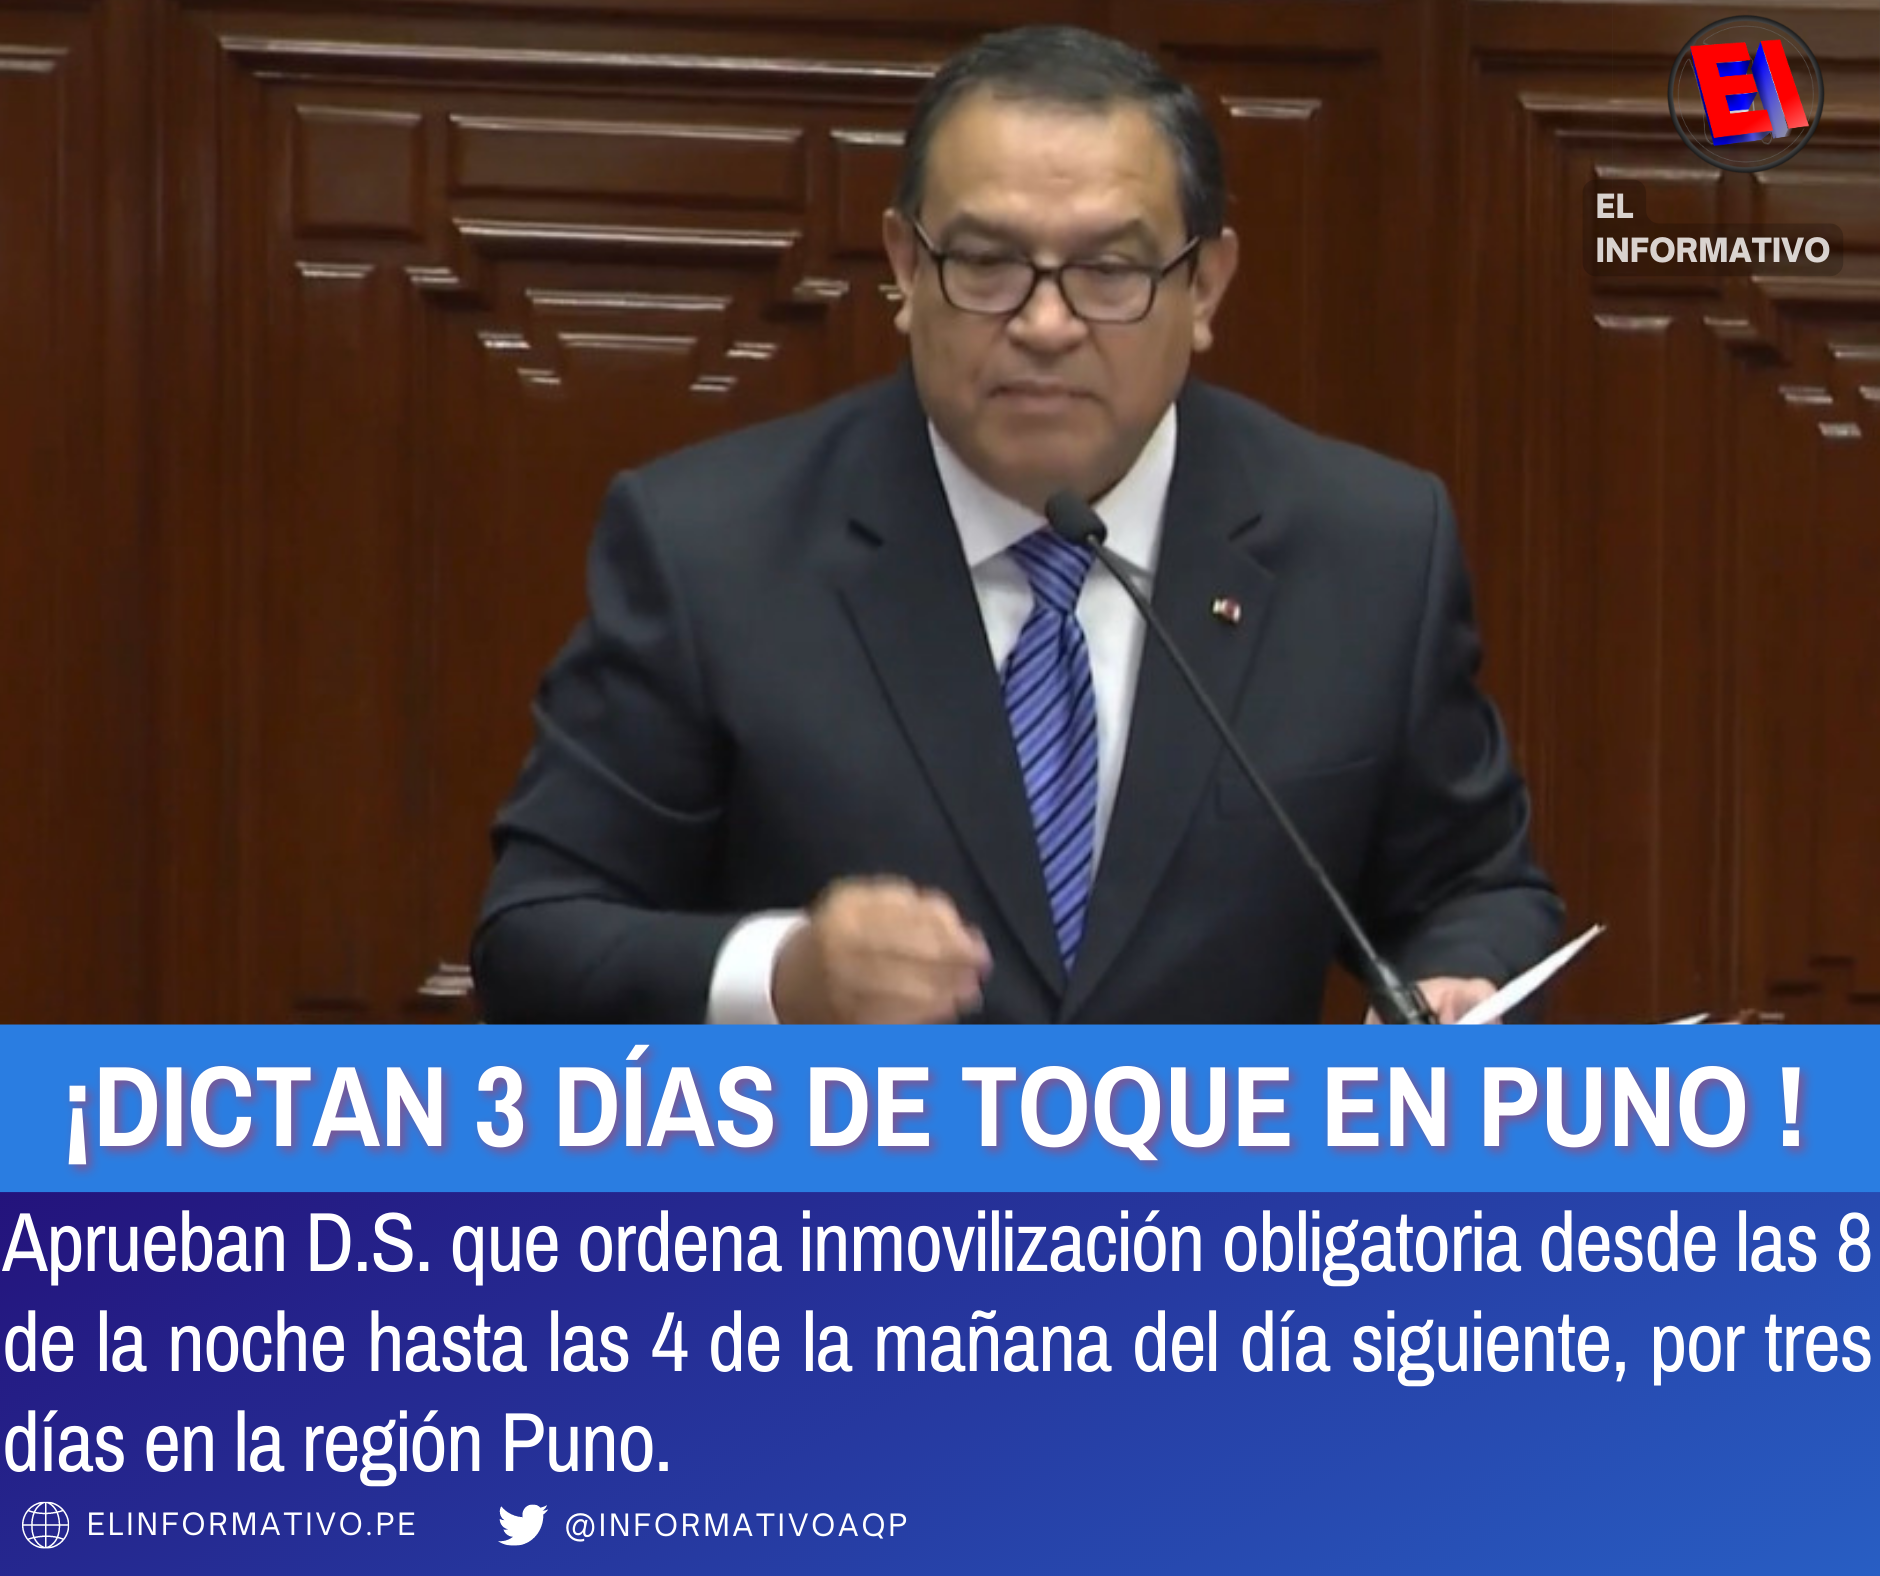 Presidente del Consejo de Ministros anuncia toque de queda en la región Puno por 3 días